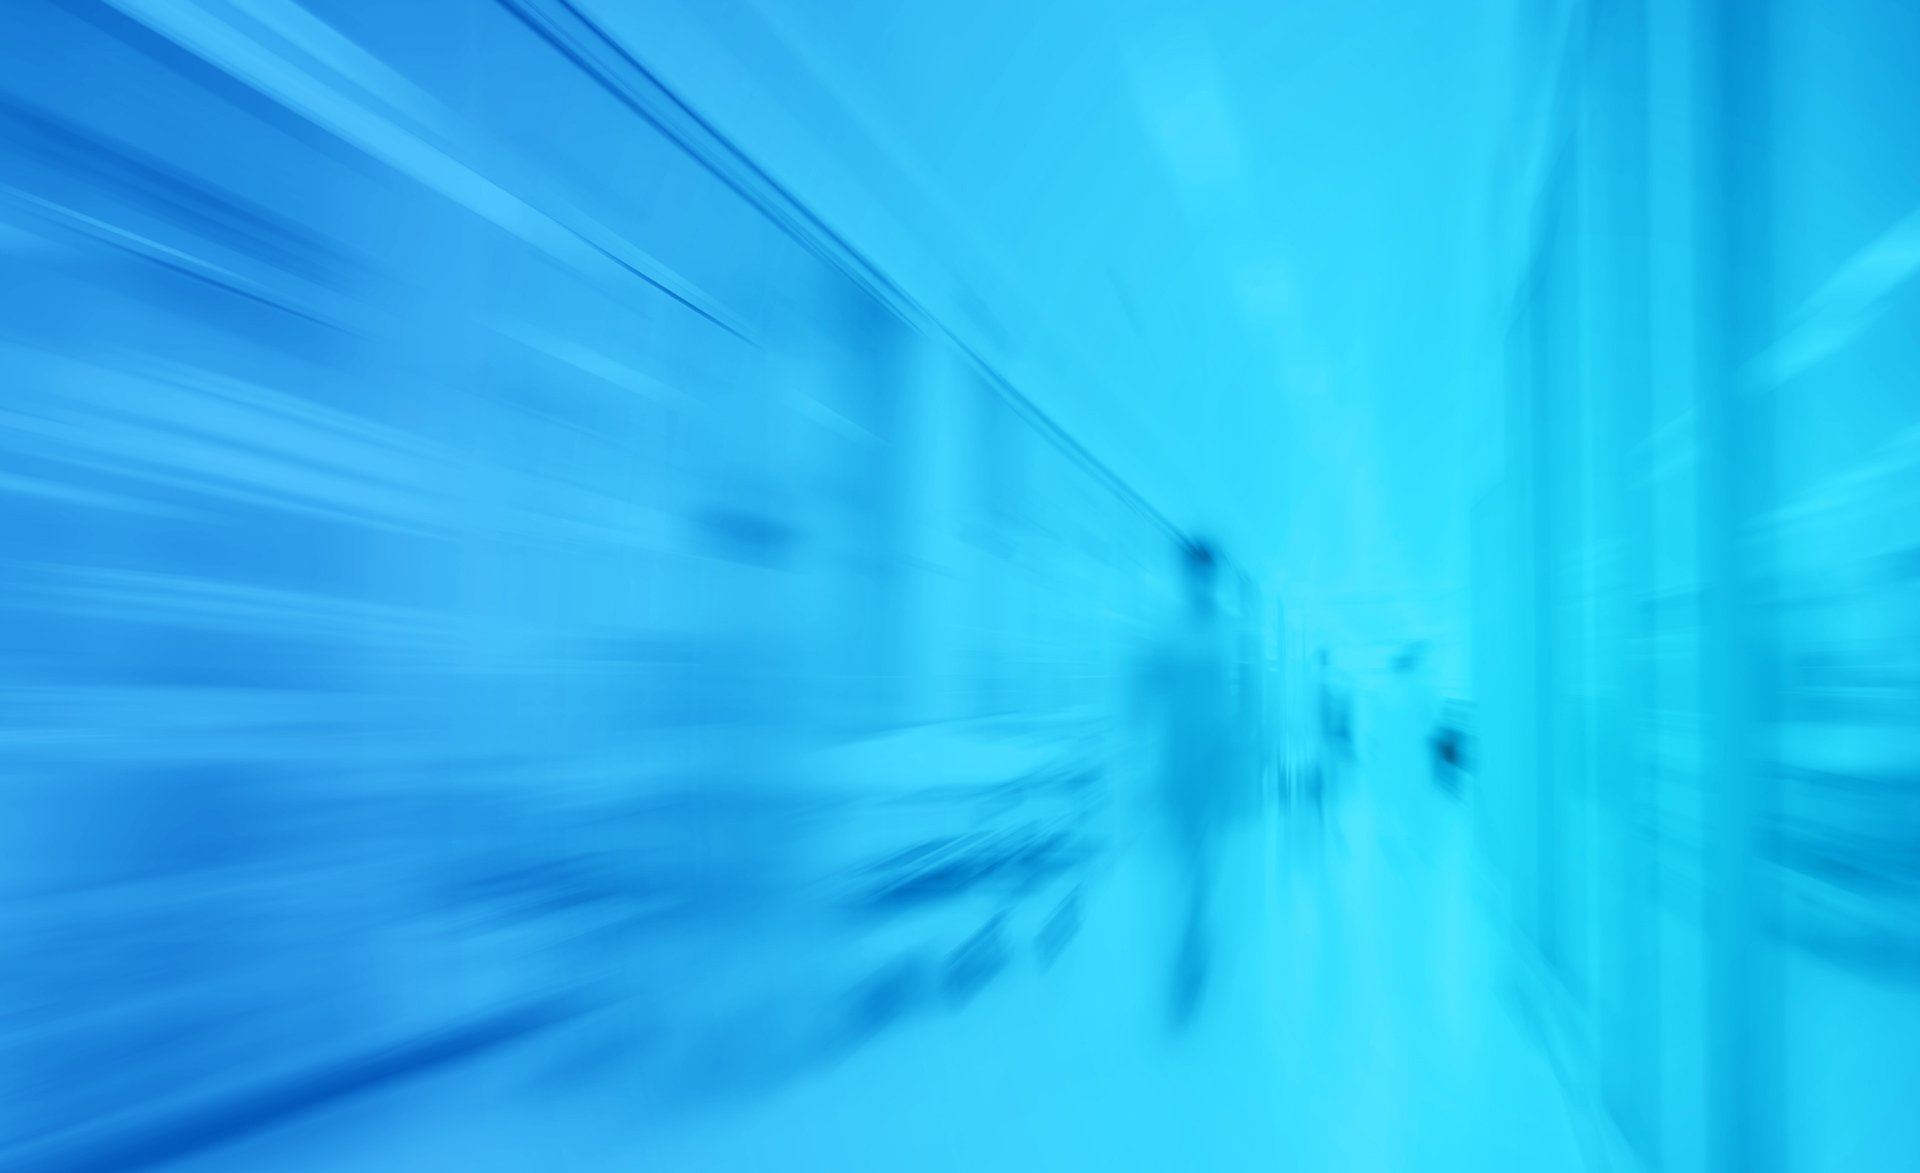 Hospital hallway, blurred